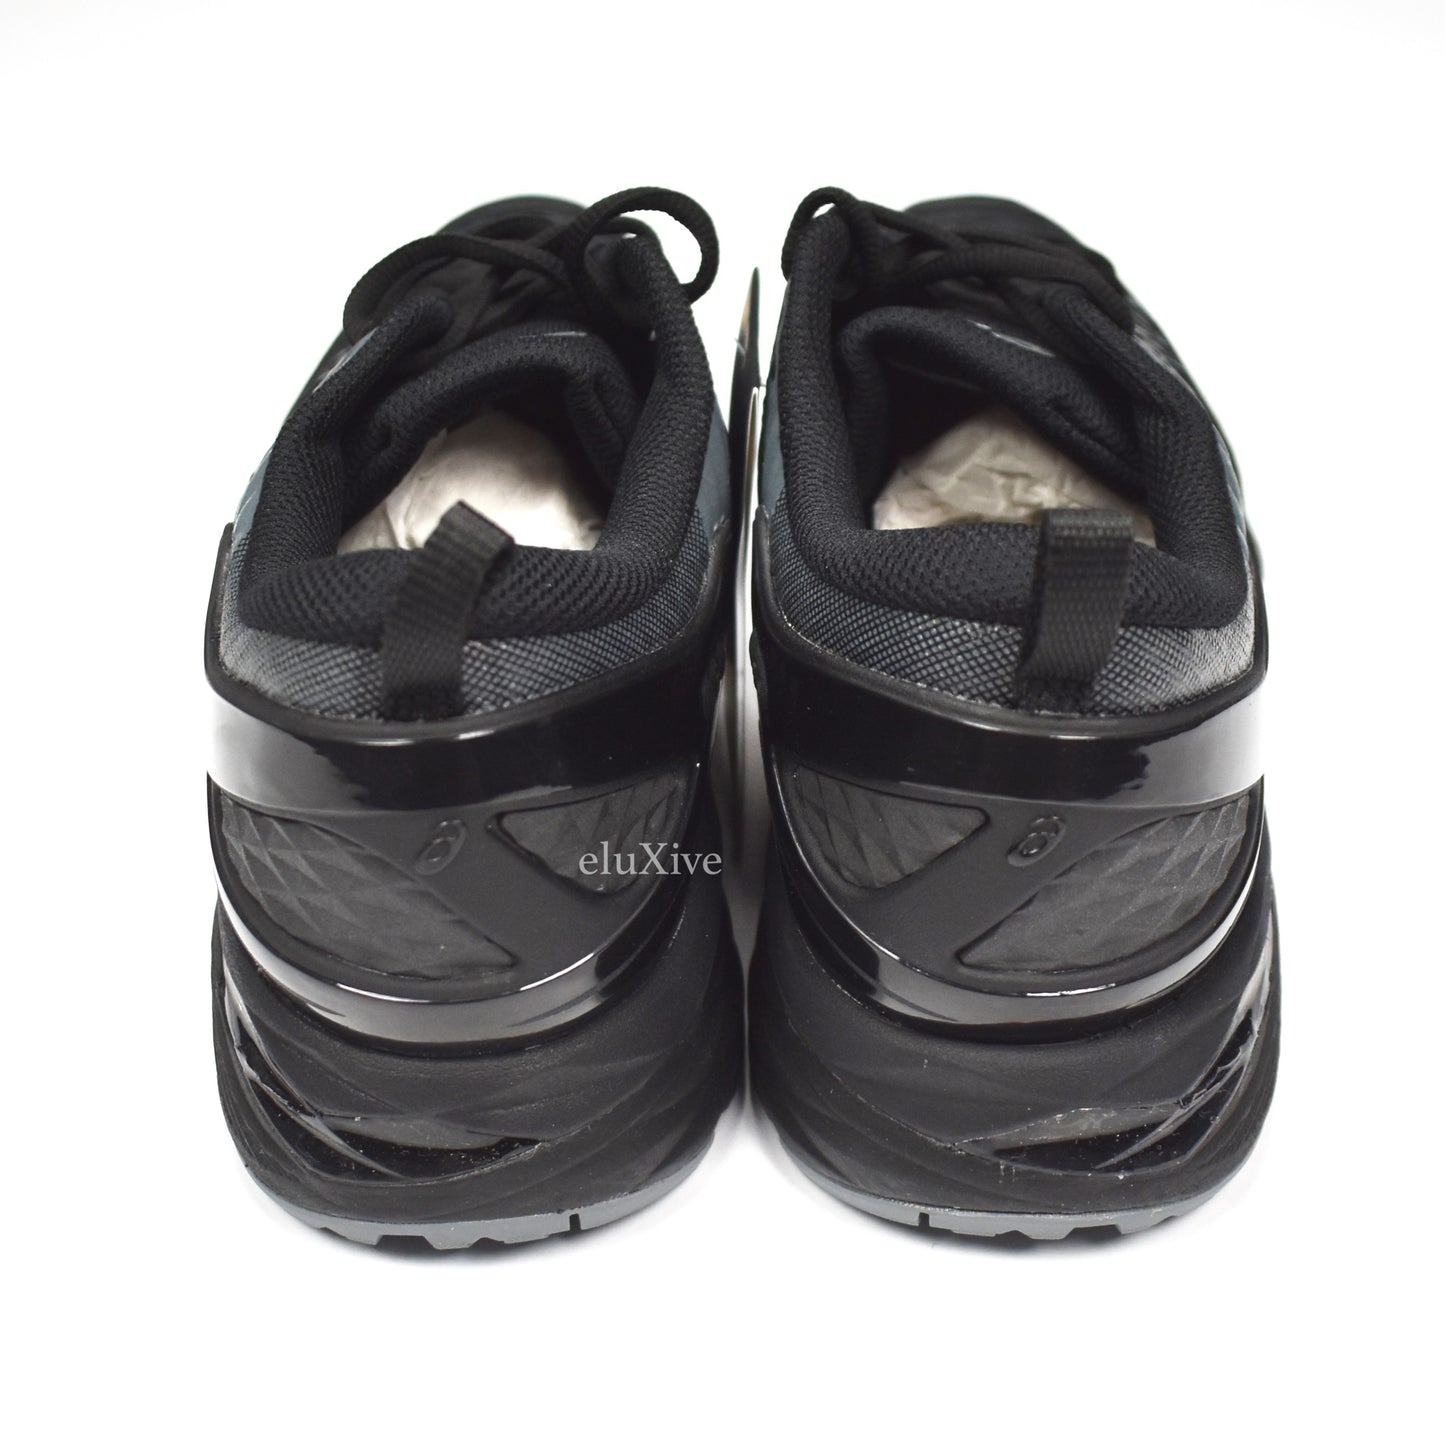 Asics x Kiko Kostadinov - Gel-Delva Sneakers (Black)